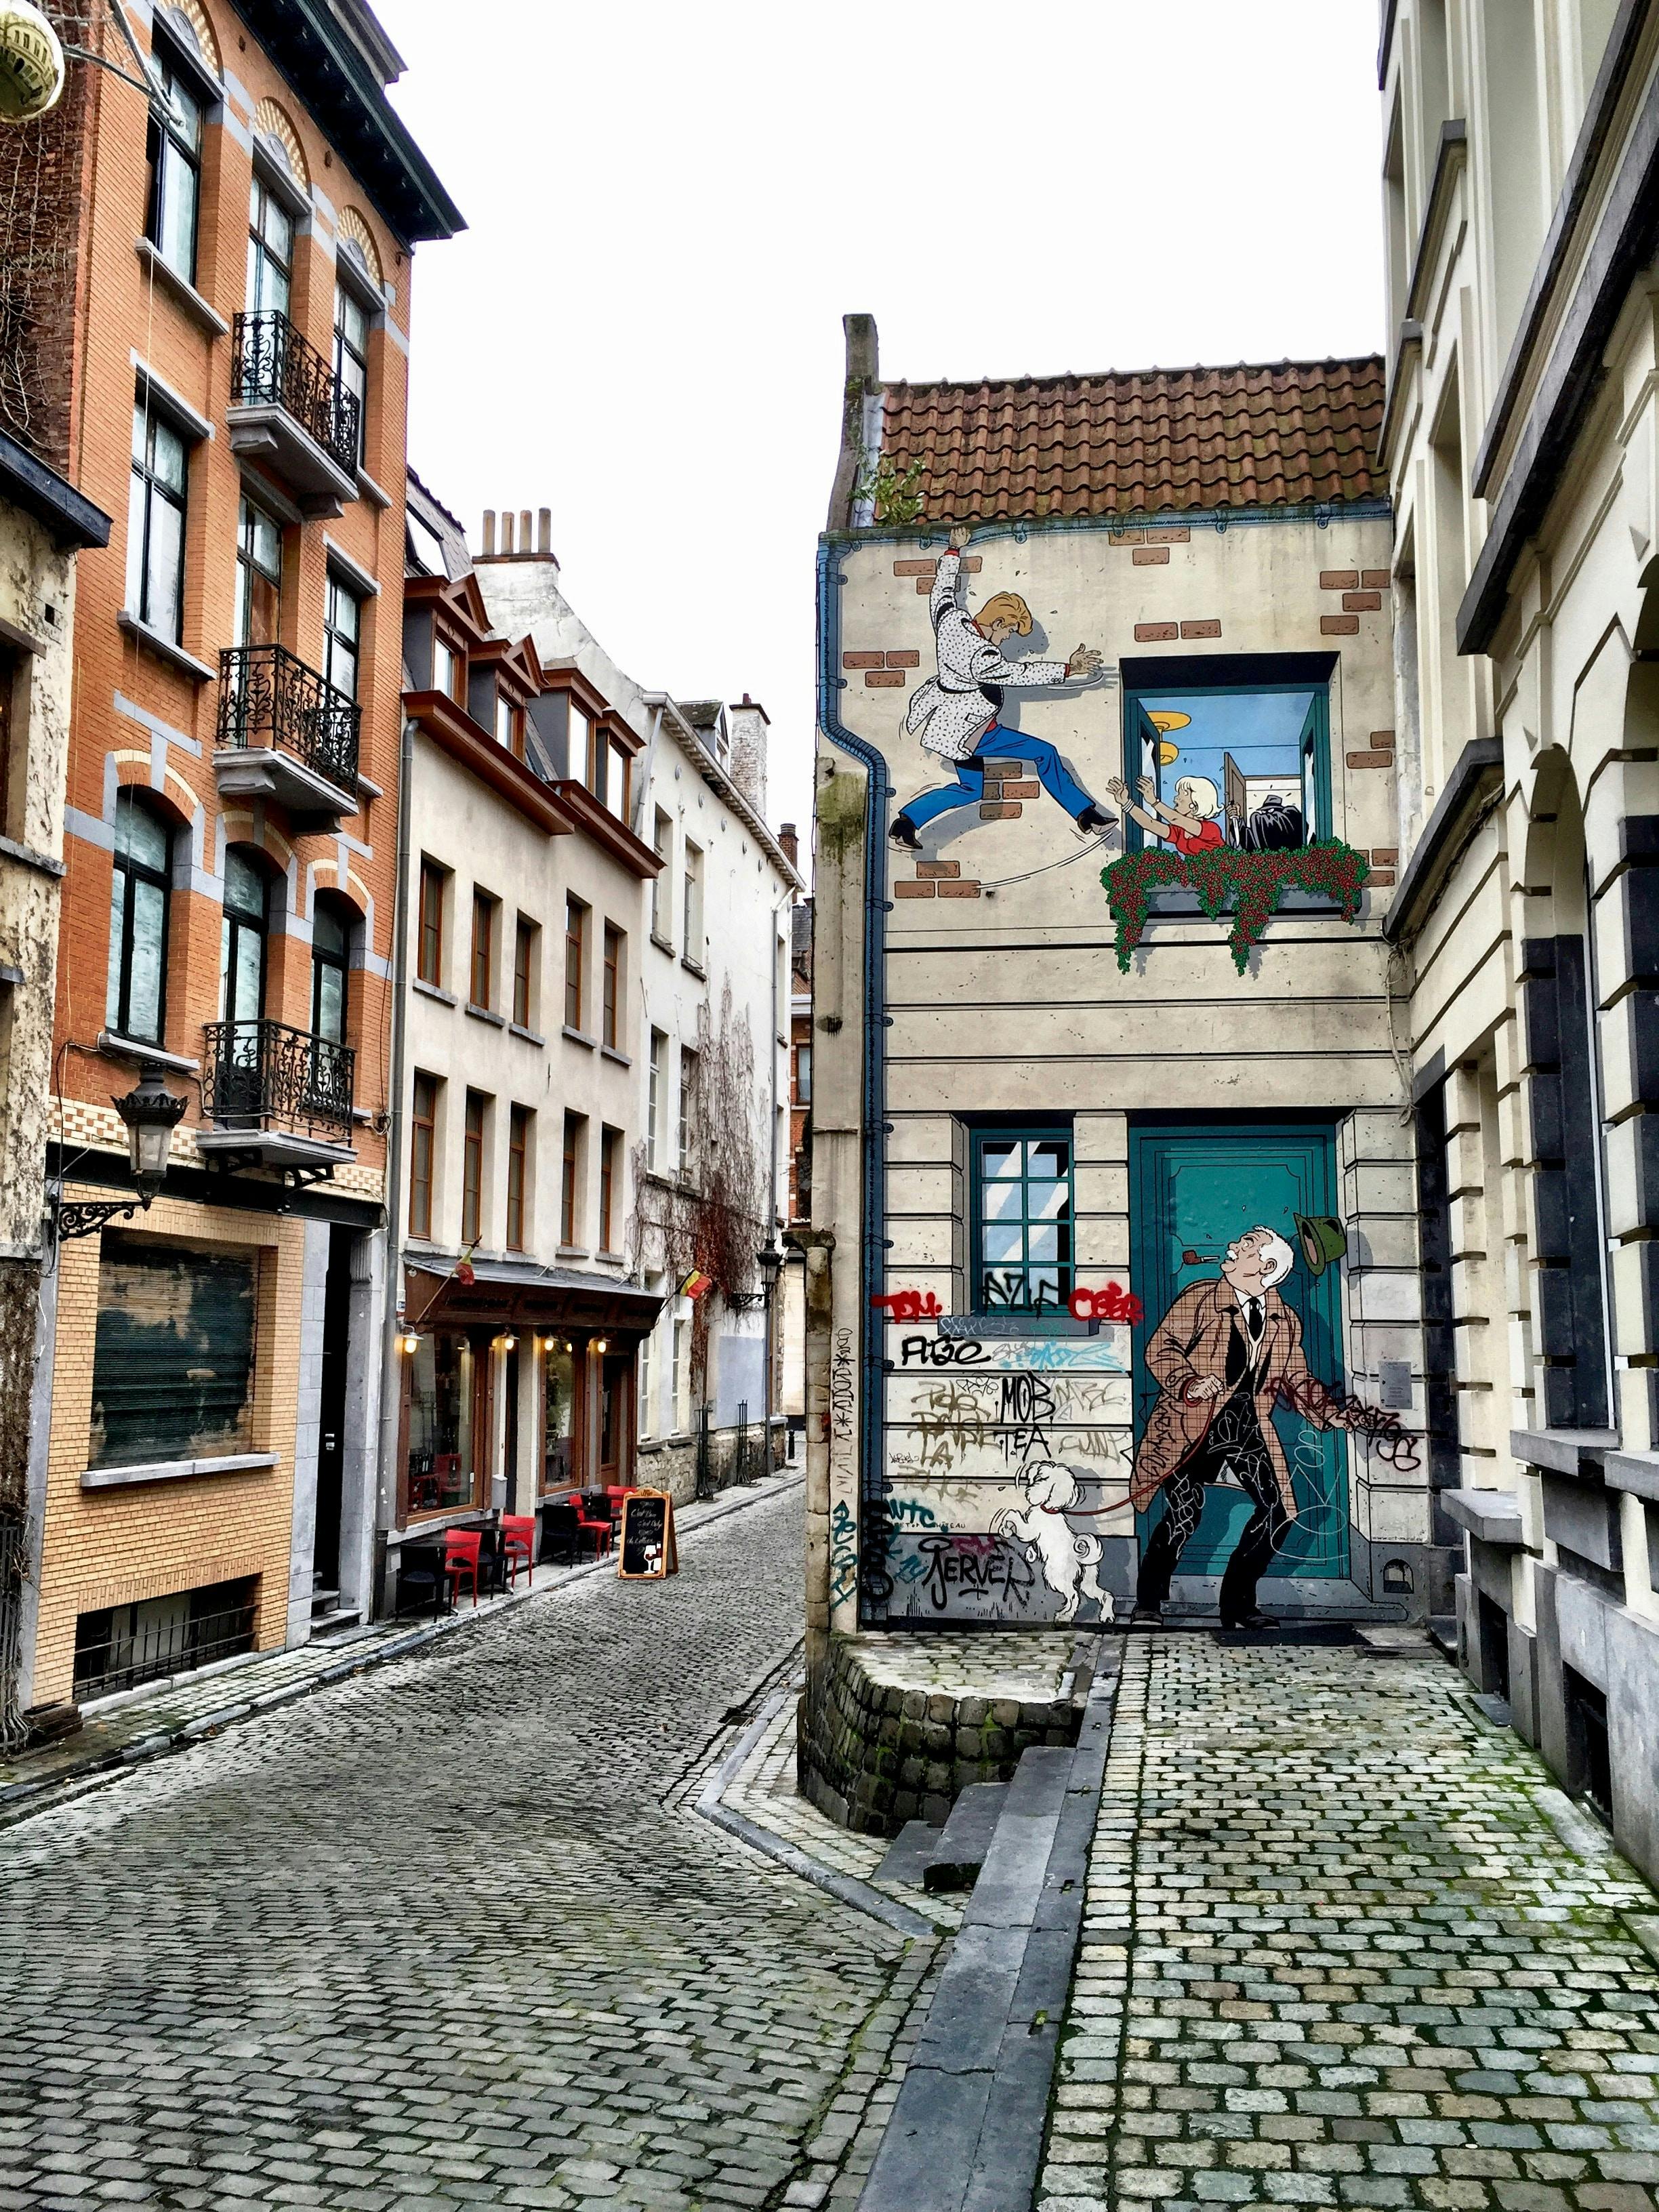 Ruelle pittoresque à Bruxelles capturant l'essence urbaine, parfaite pour une escapade Pop'in en ville.